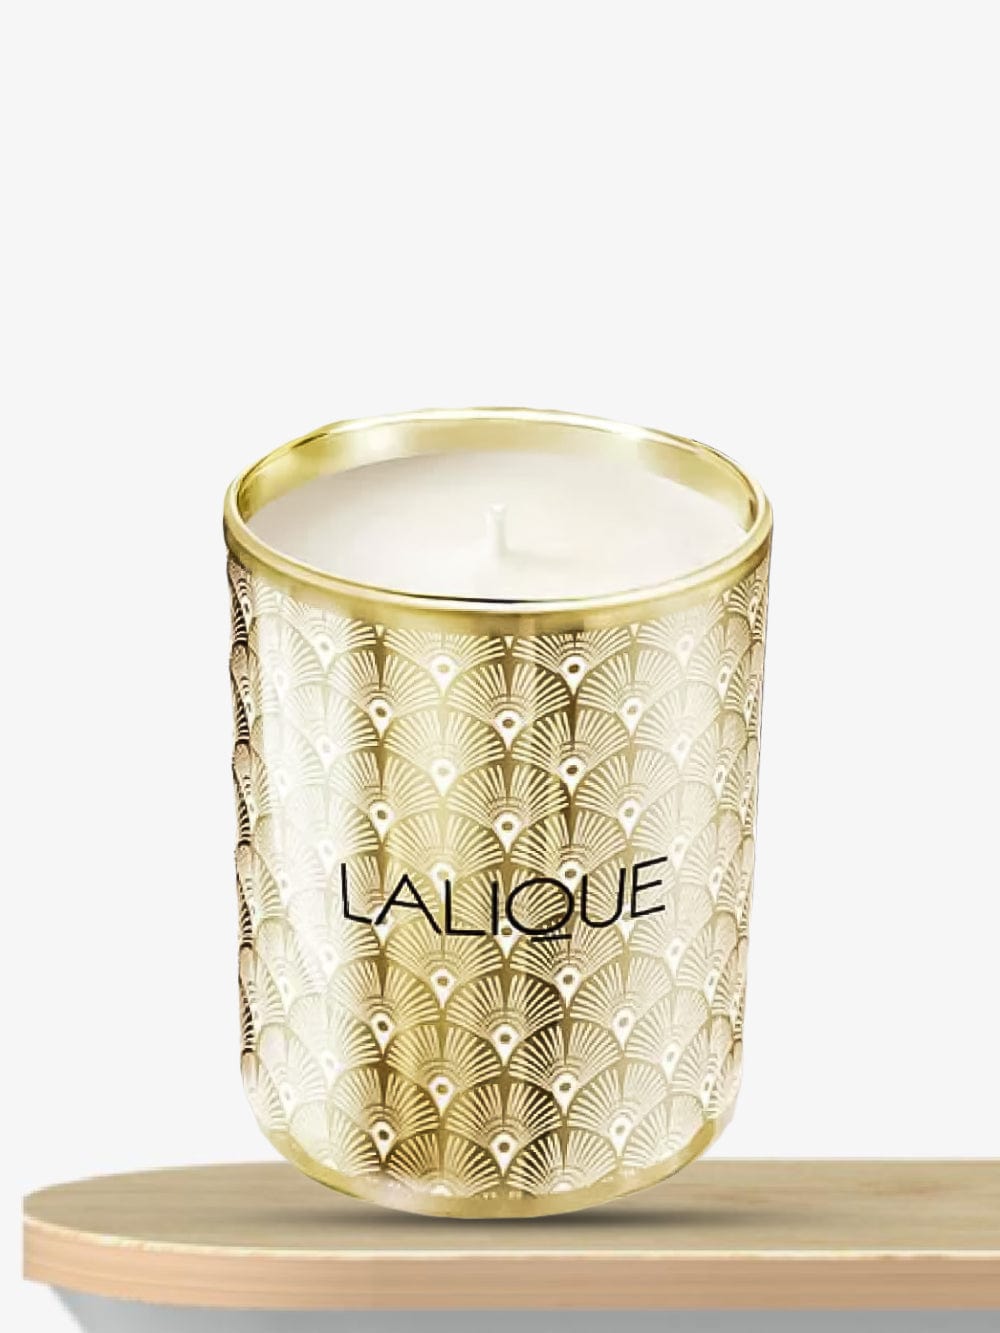 Lalique Noir Premier Plume Blanche 1901 Scented Candle 190g